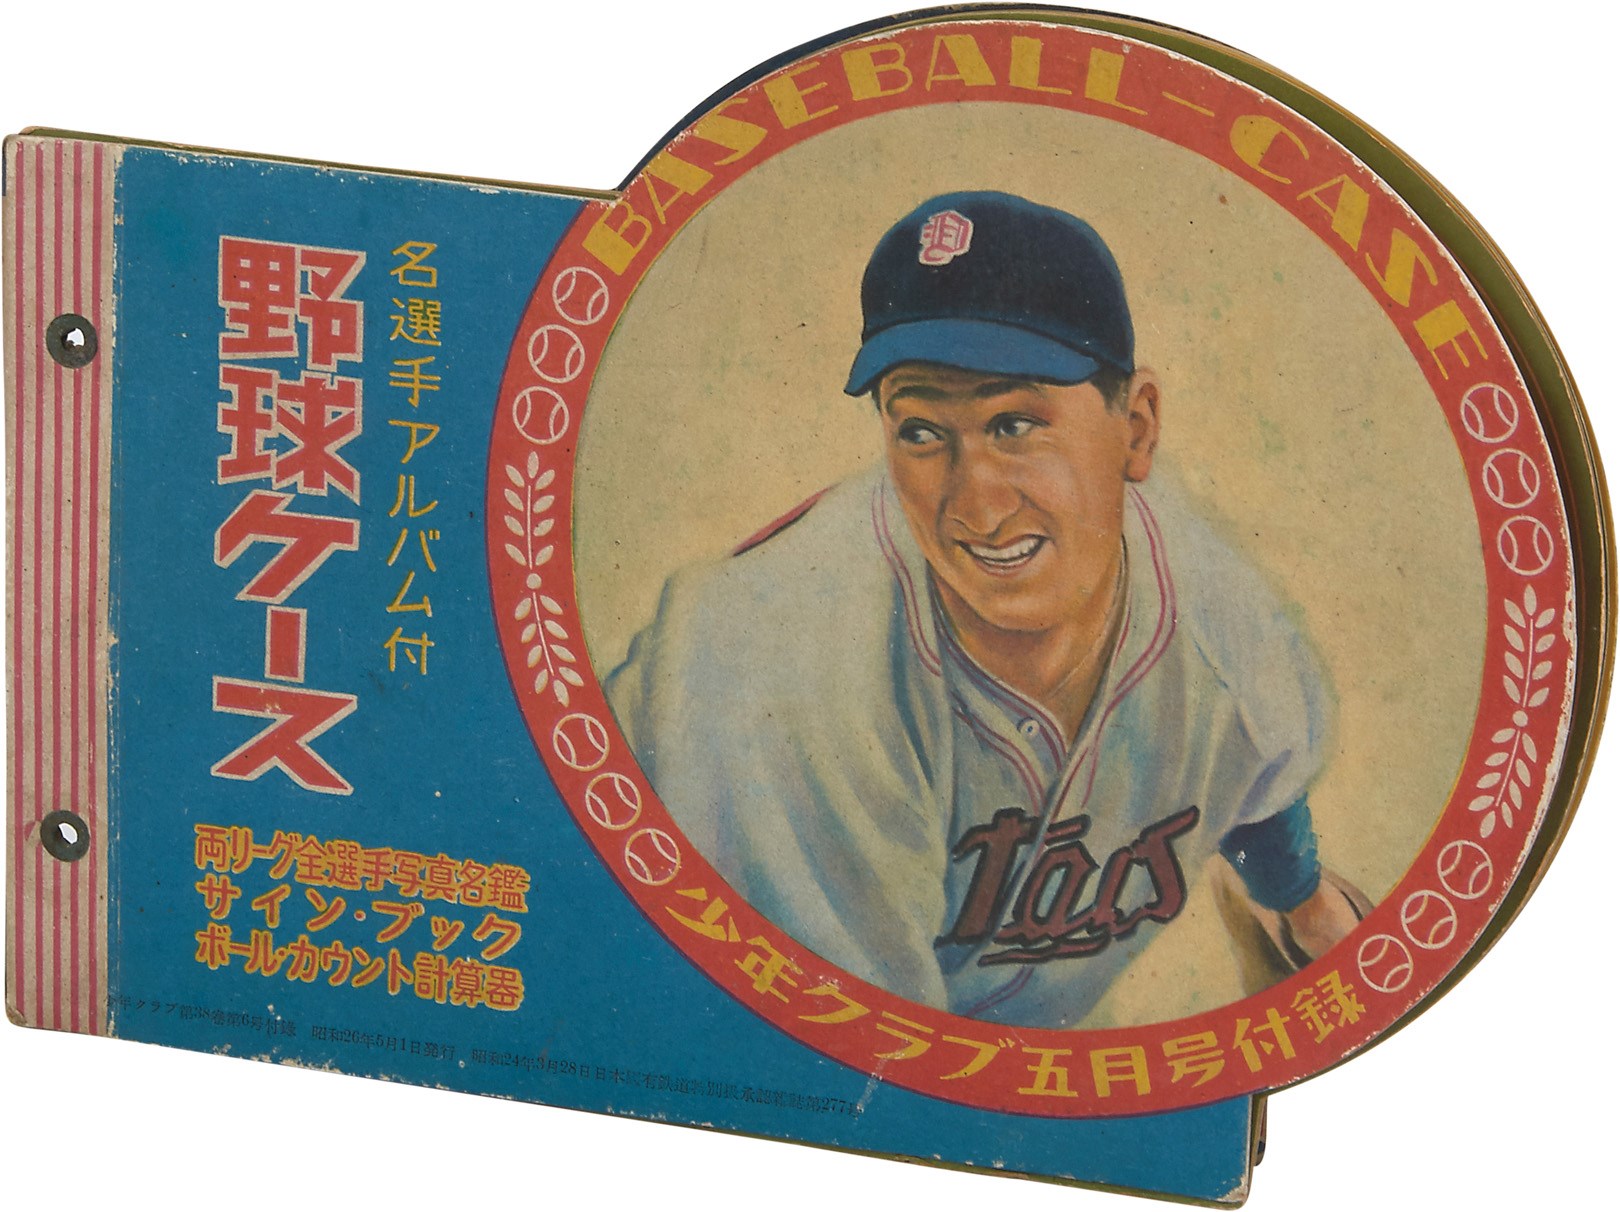 1951 Japanese "All-Star" Baseball Pin-up Book